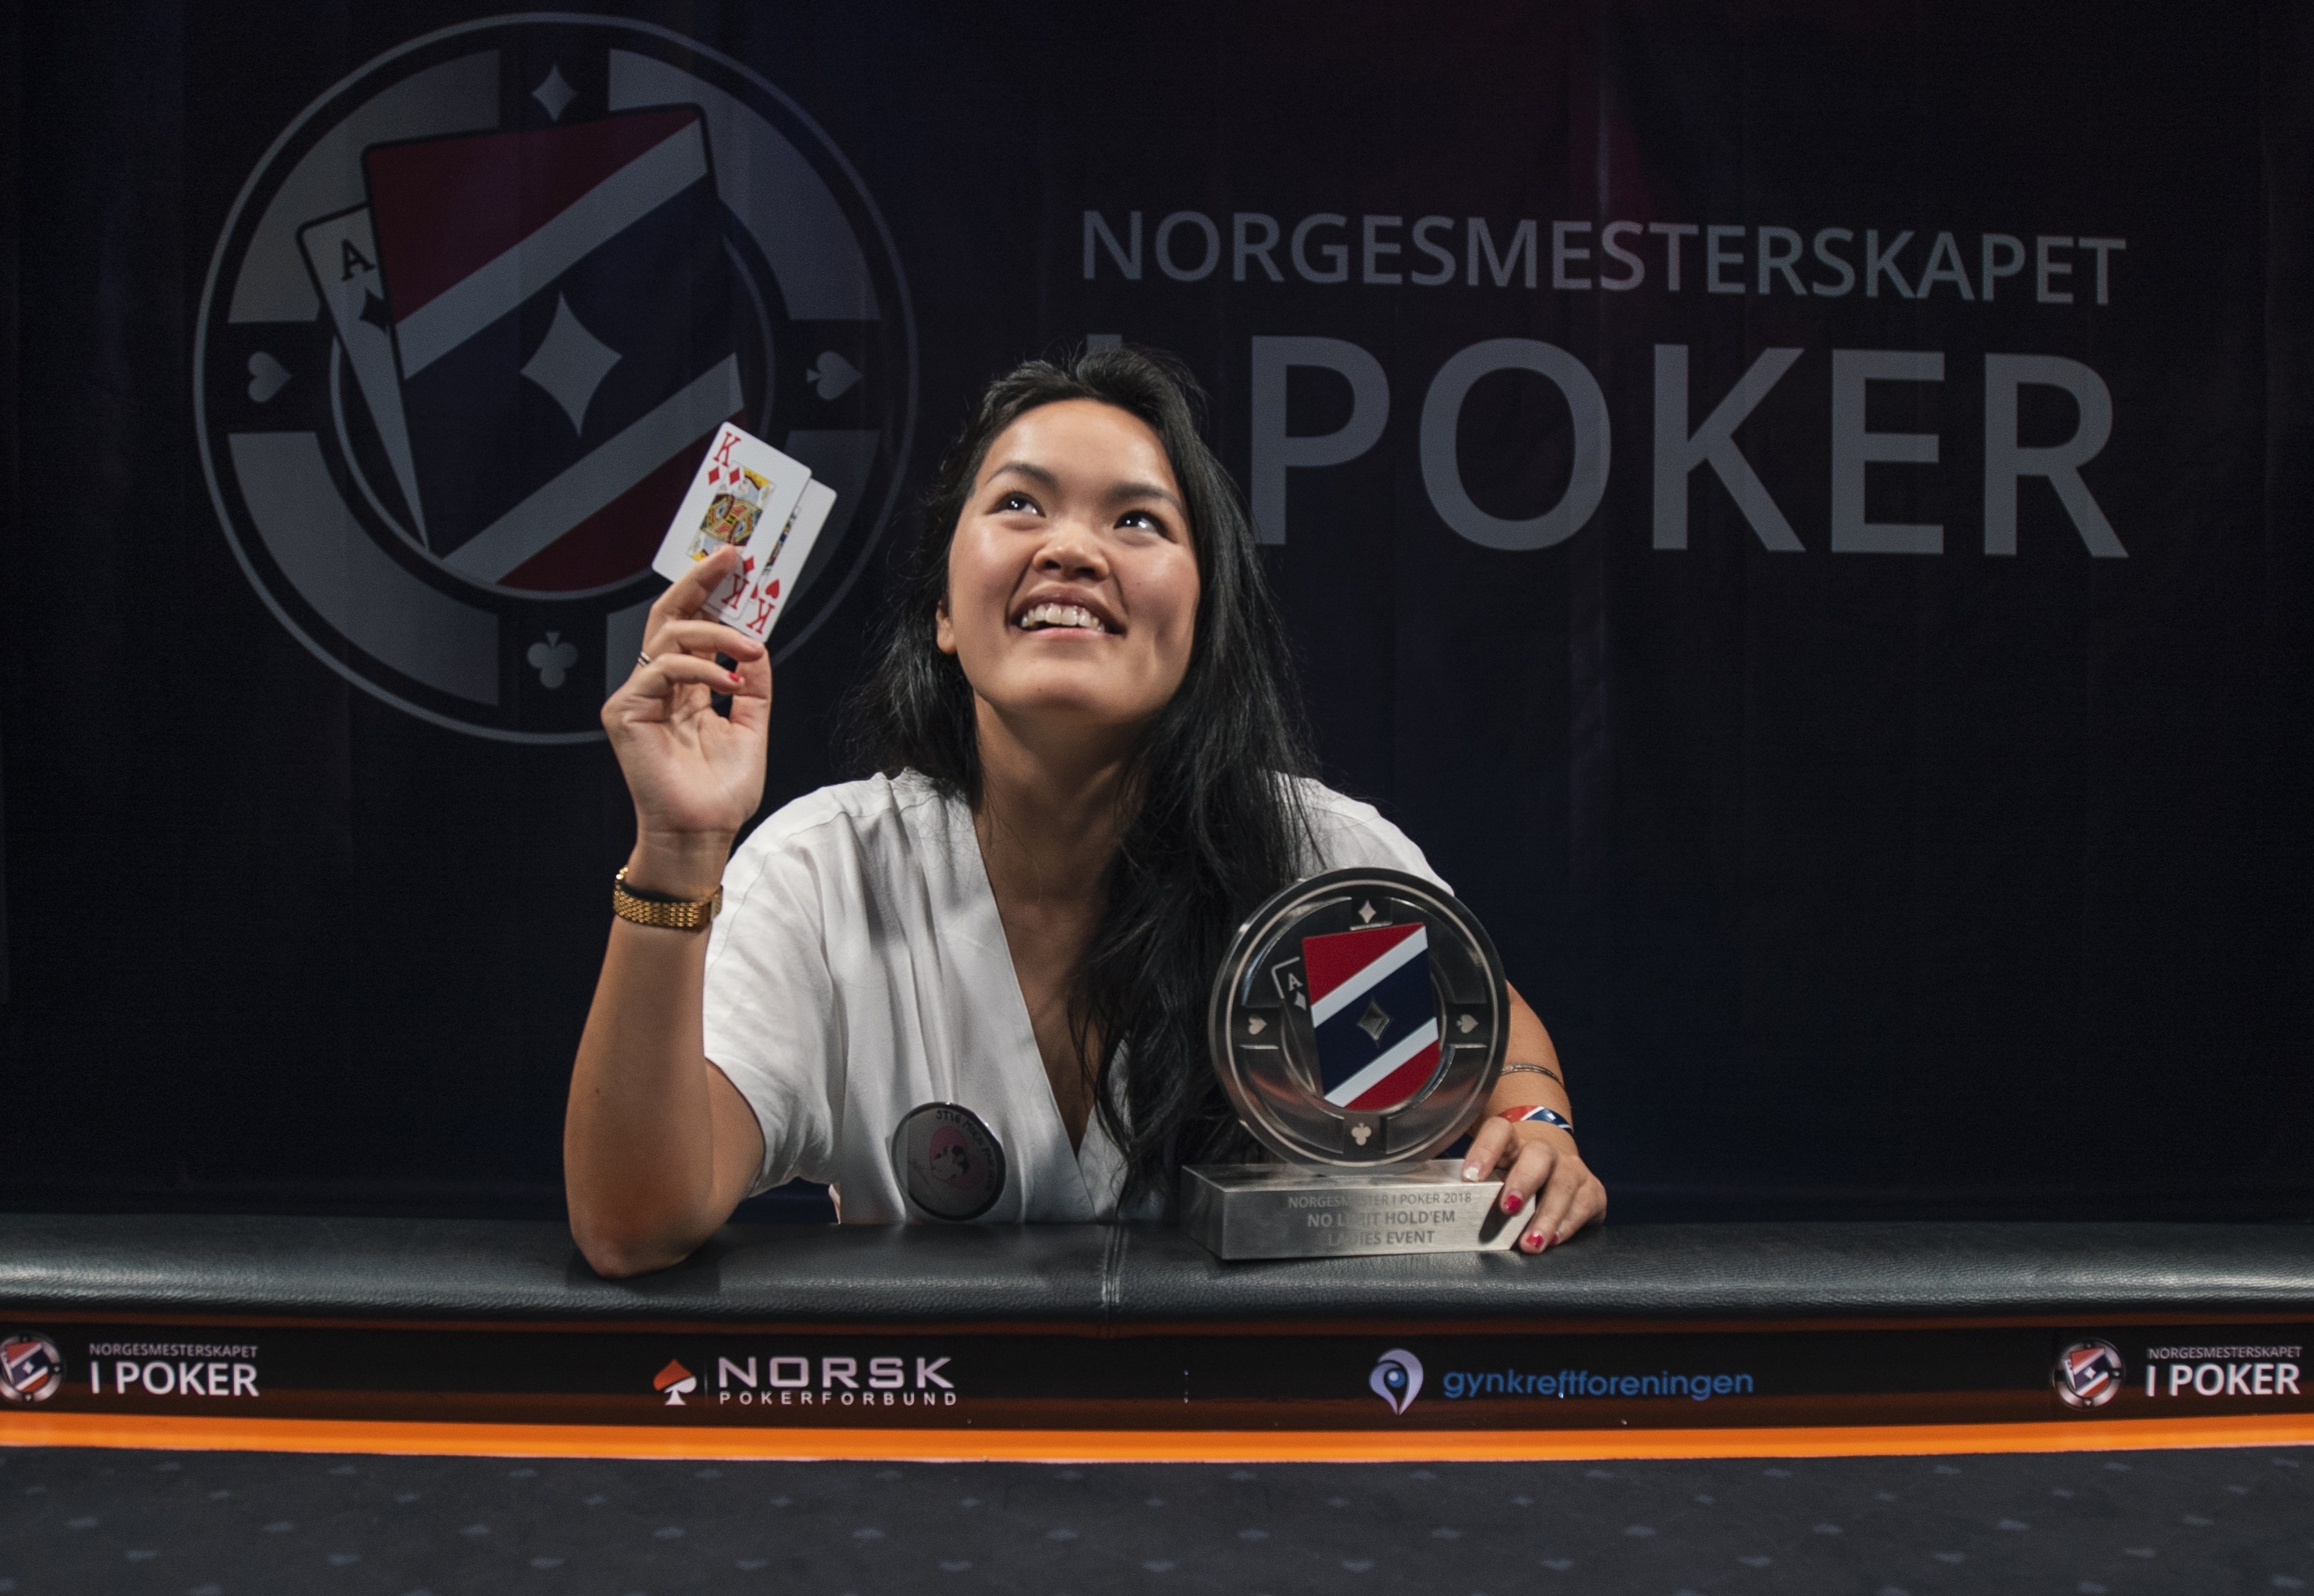 Norgesmesterskapet i poker 2019, 27. august-2. september 2019, Foto: Norgesmesterskapet i poker